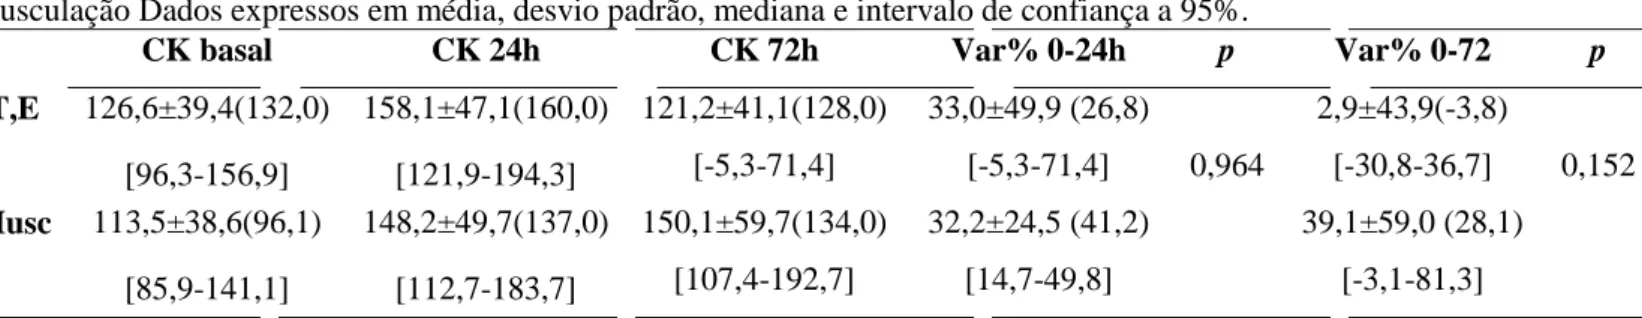 Tabela 5 - Comparação do comportamento de CK entre os grupos submetidos aos treinamentos de tubos elásticos e  musculação Dados expressos em média, desvio padrão, mediana e intervalo de confiança a 95%